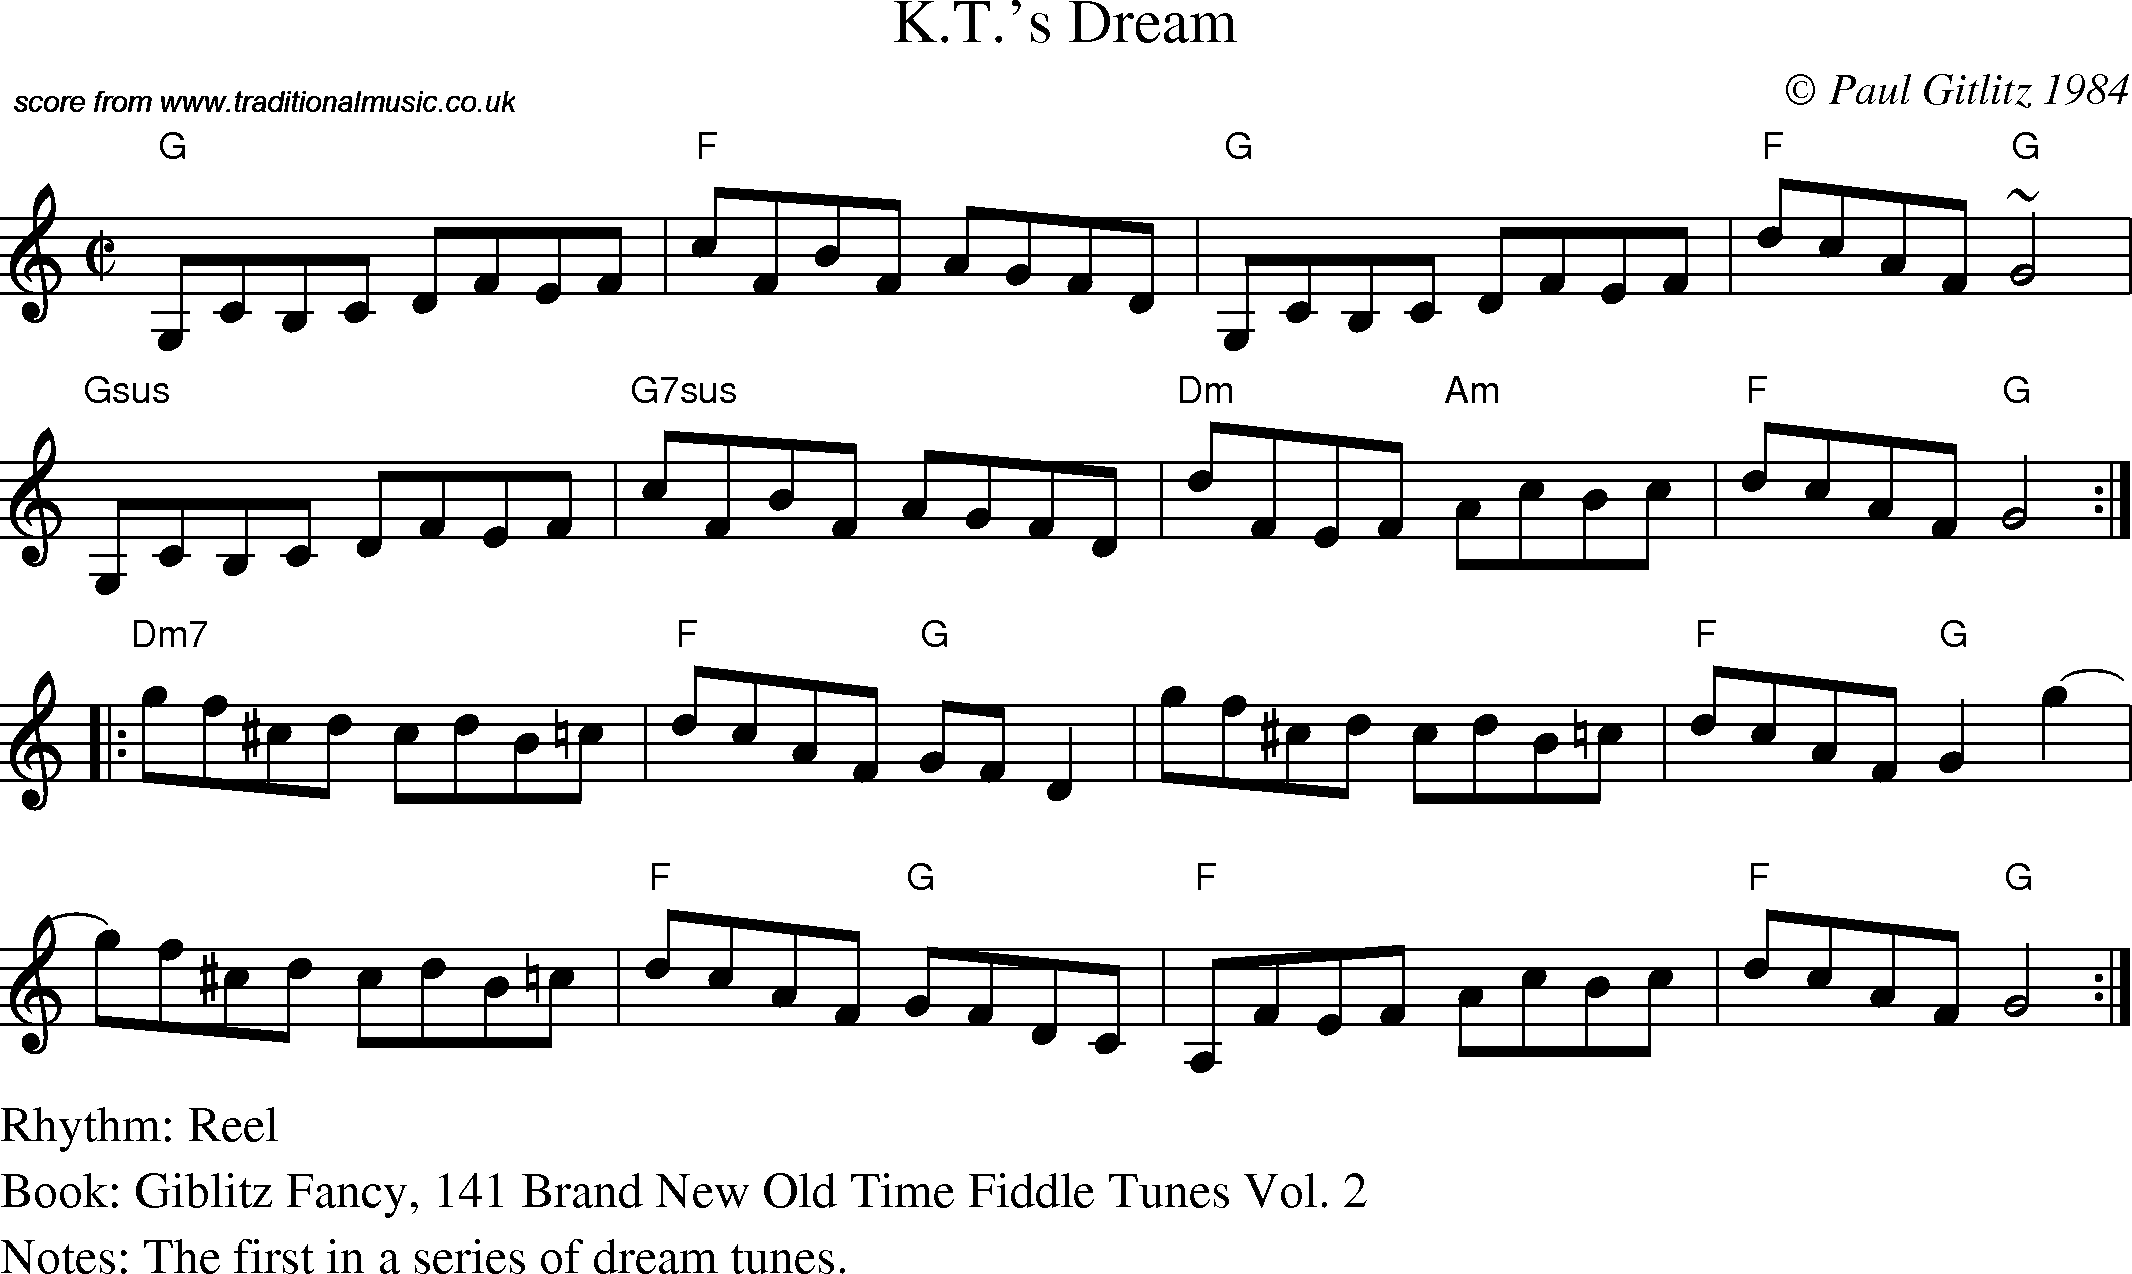 Sheet Music Score for Reel - K.T.'s Dream